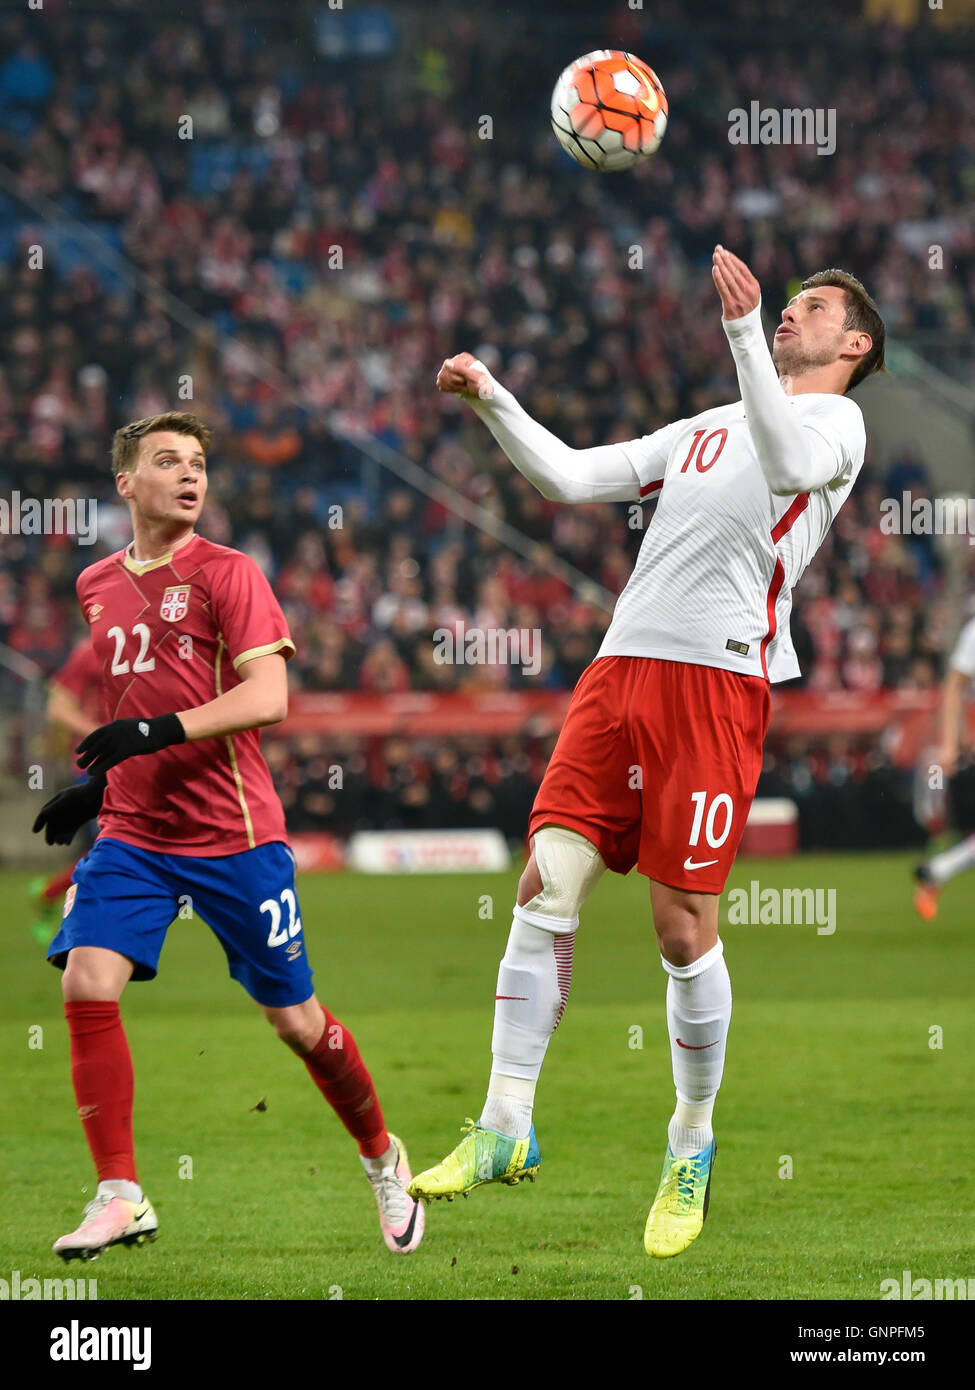 Posen, Polen - 23. März 2016: Grzegorz Krychowiak in Aktion während internationaler Fußball Freundschaftsspiel Polen Vs Serbien 1:0 Stockfoto